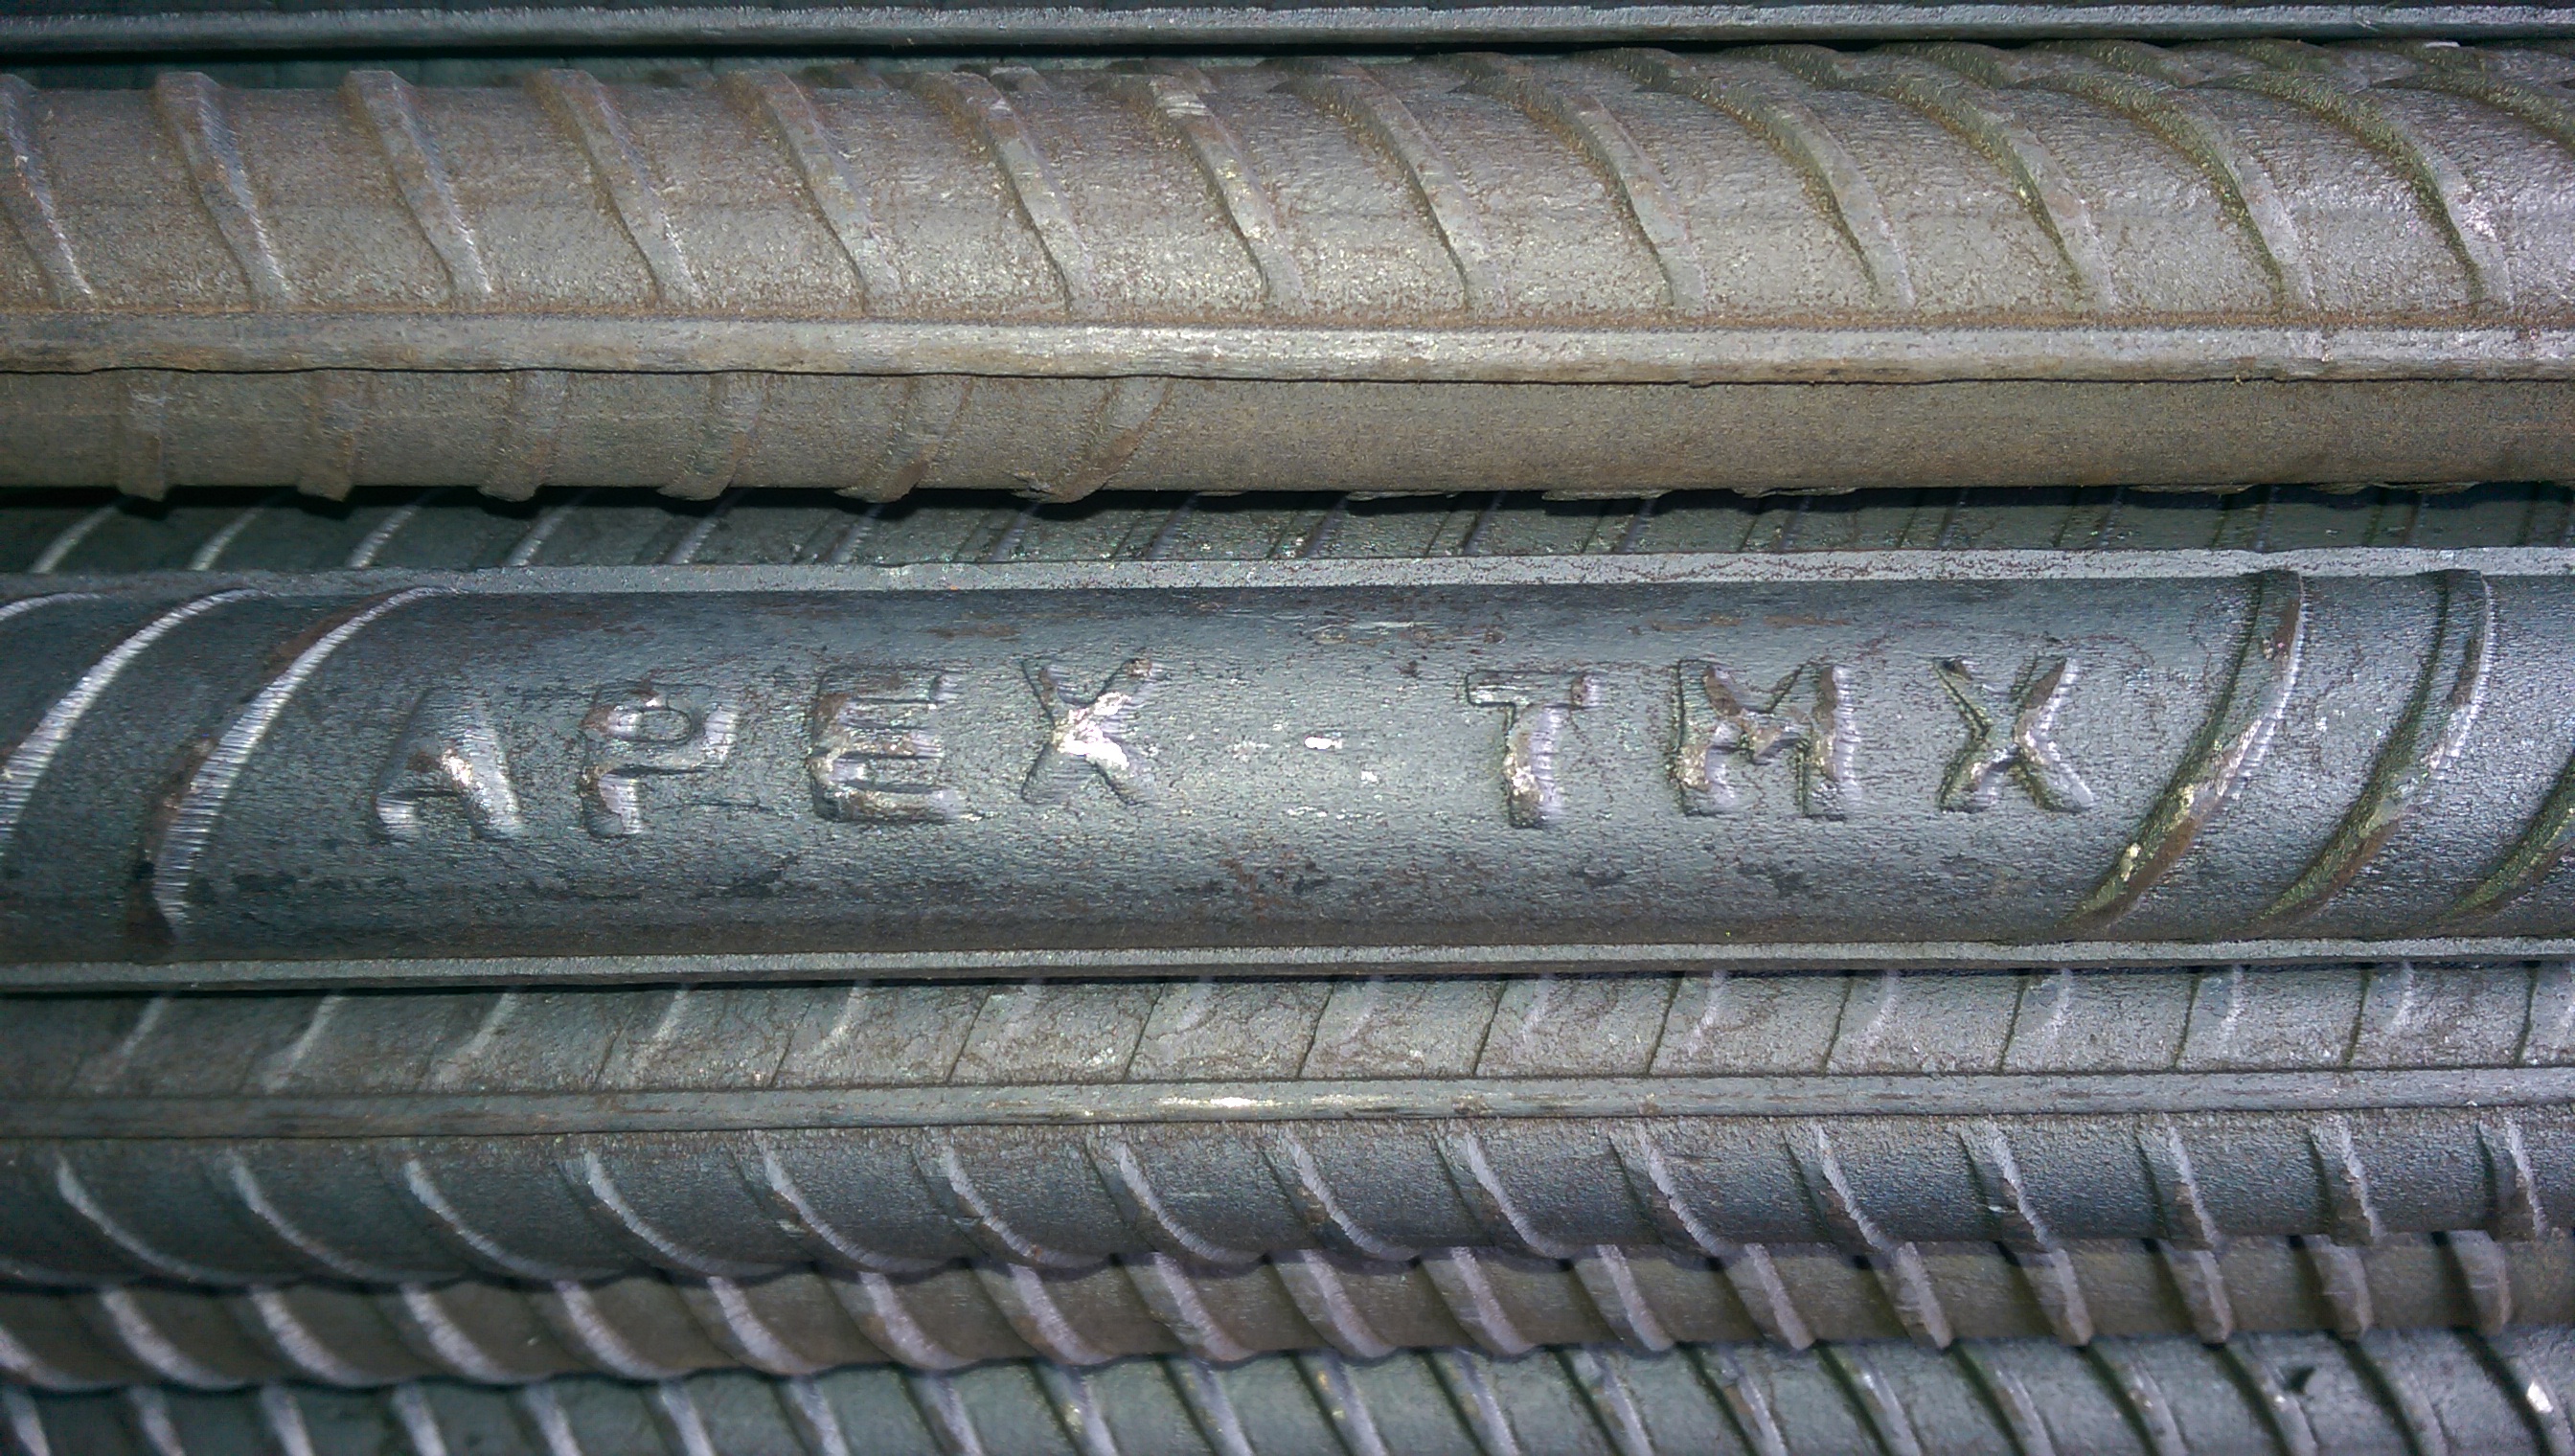 Apex TMX Deformed Steel Bars